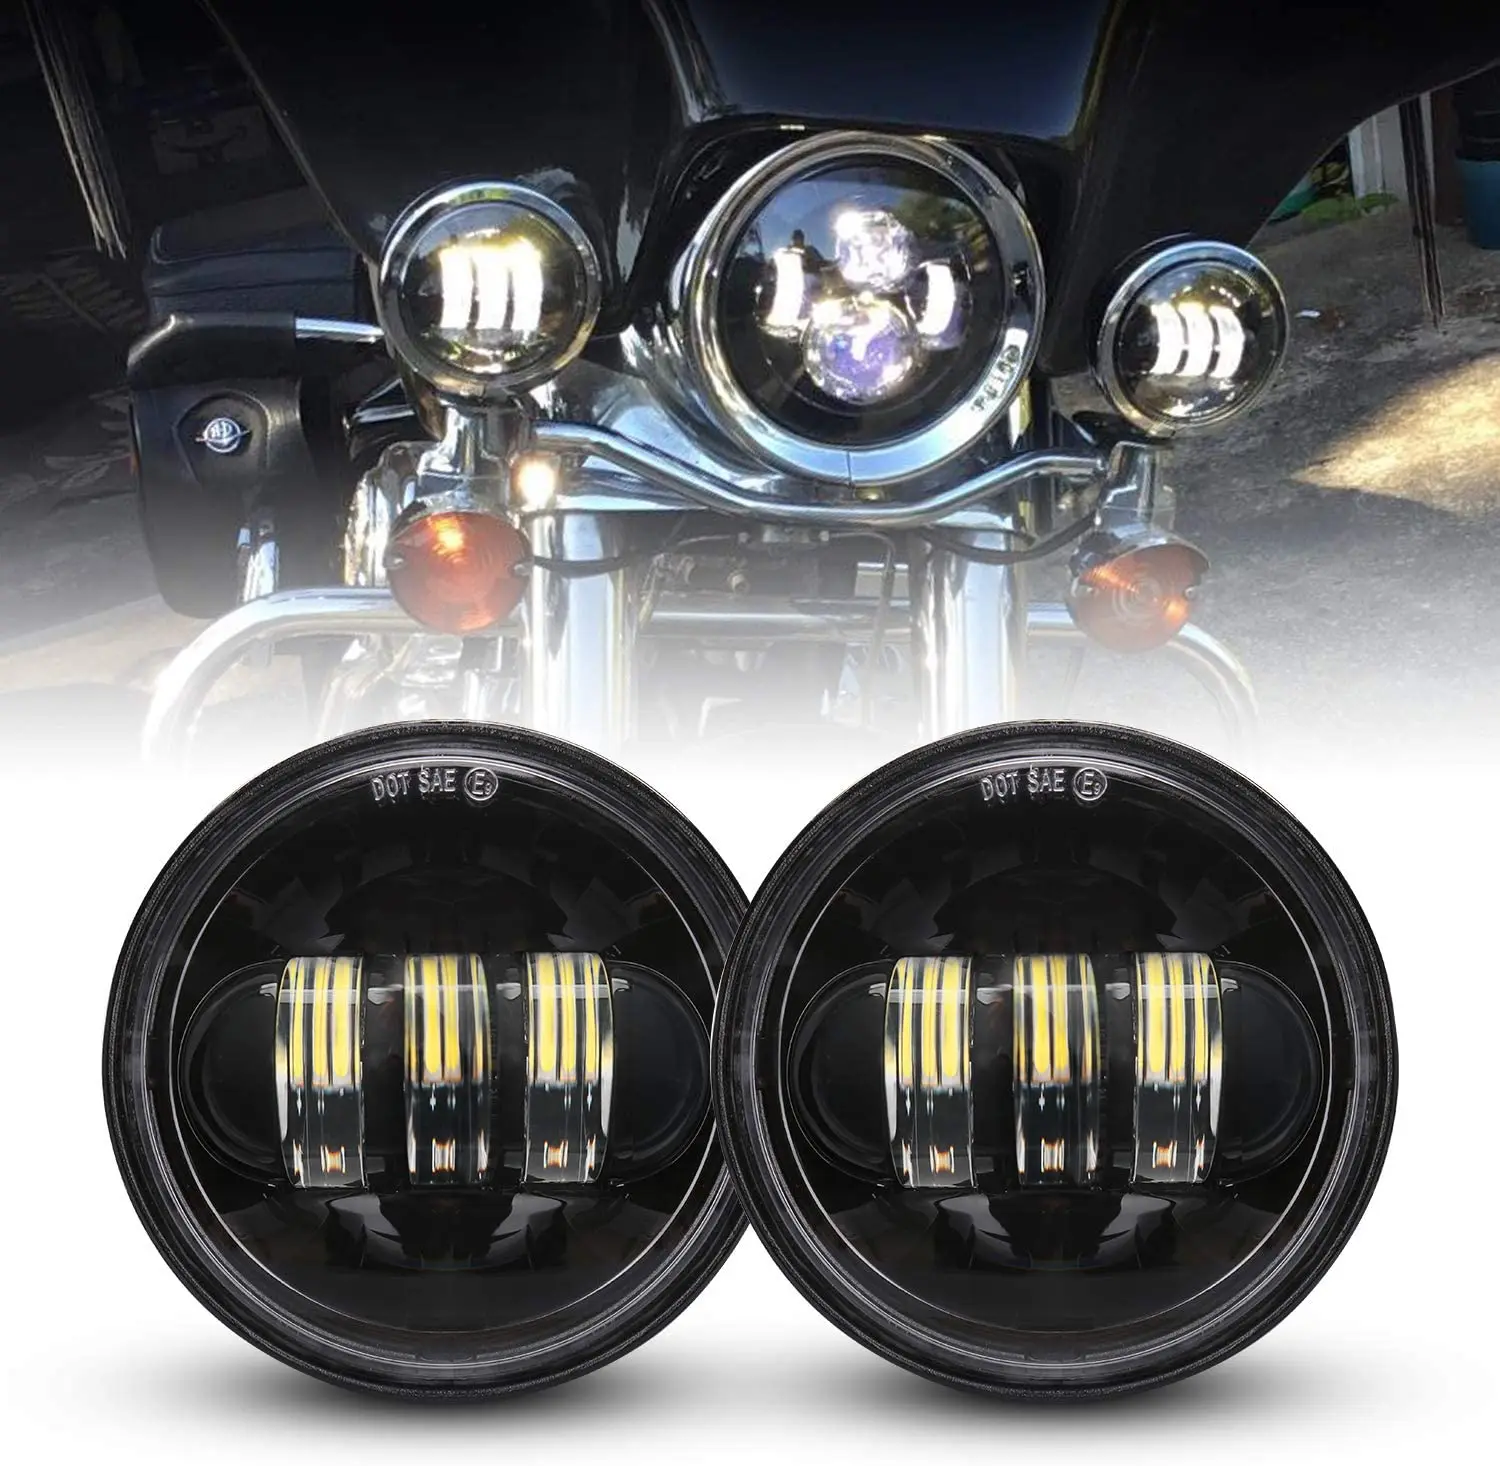 Dot approvato 2 pezzi 4.5 pollici Cree LED luce di passaggio fendinebbia a LED proiettore per moto lampada di guida per motore Harley Davidson